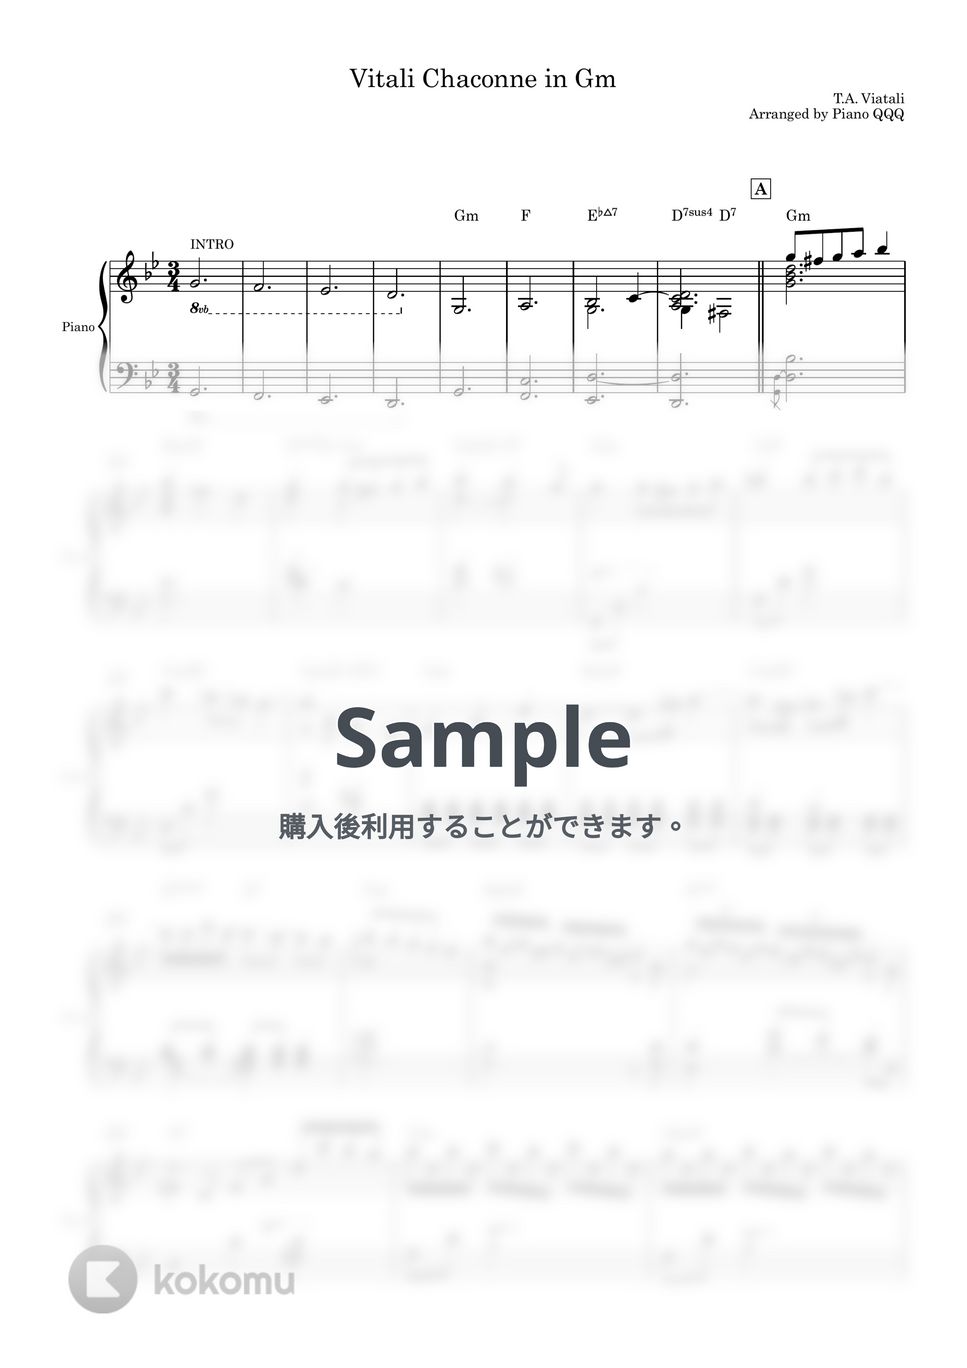 ビタリー - シャコンヌ (ピアノソロ楽譜) by Piano QQQ